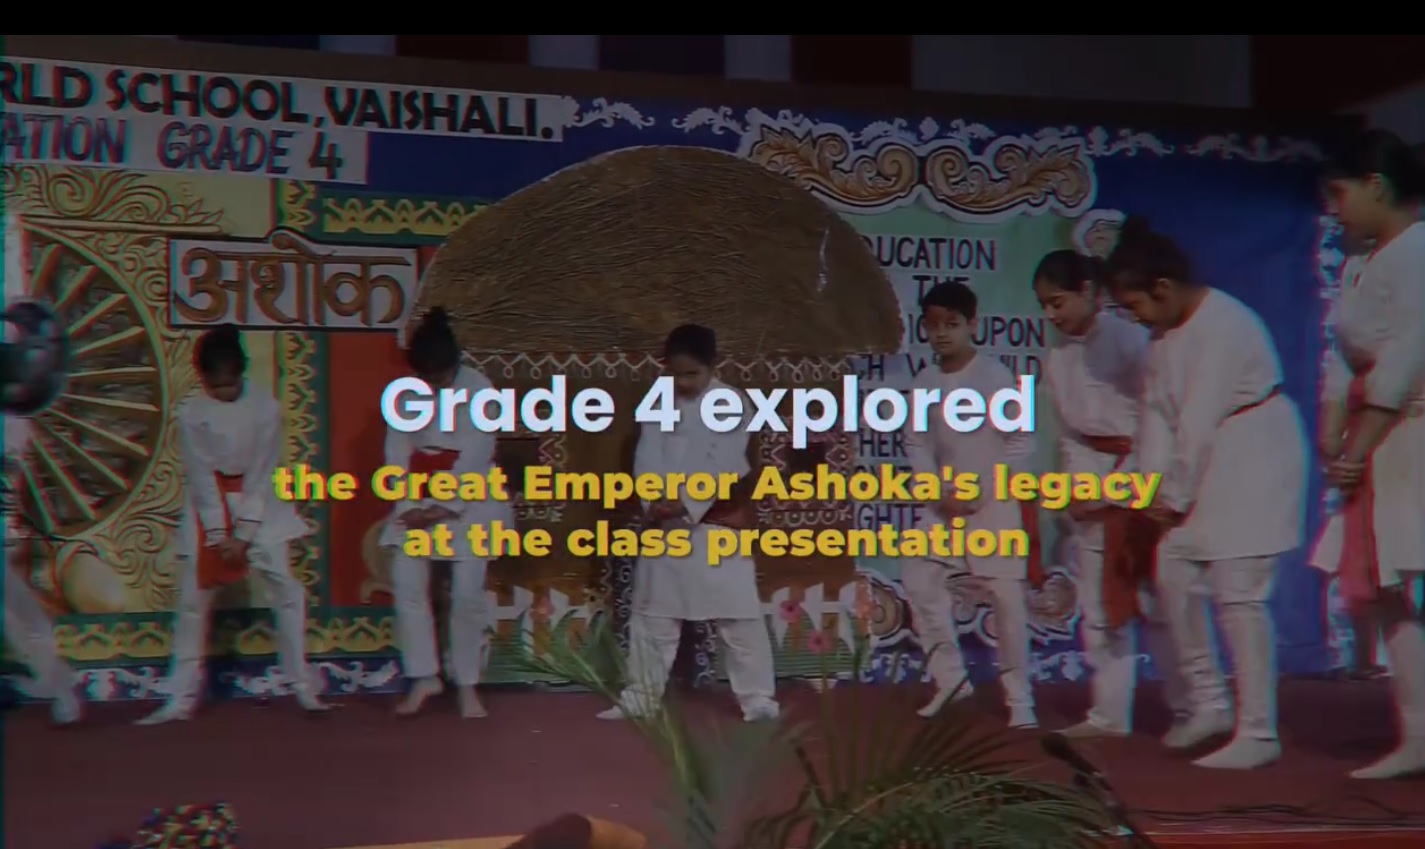 Class presentation on Emperor Ashoka